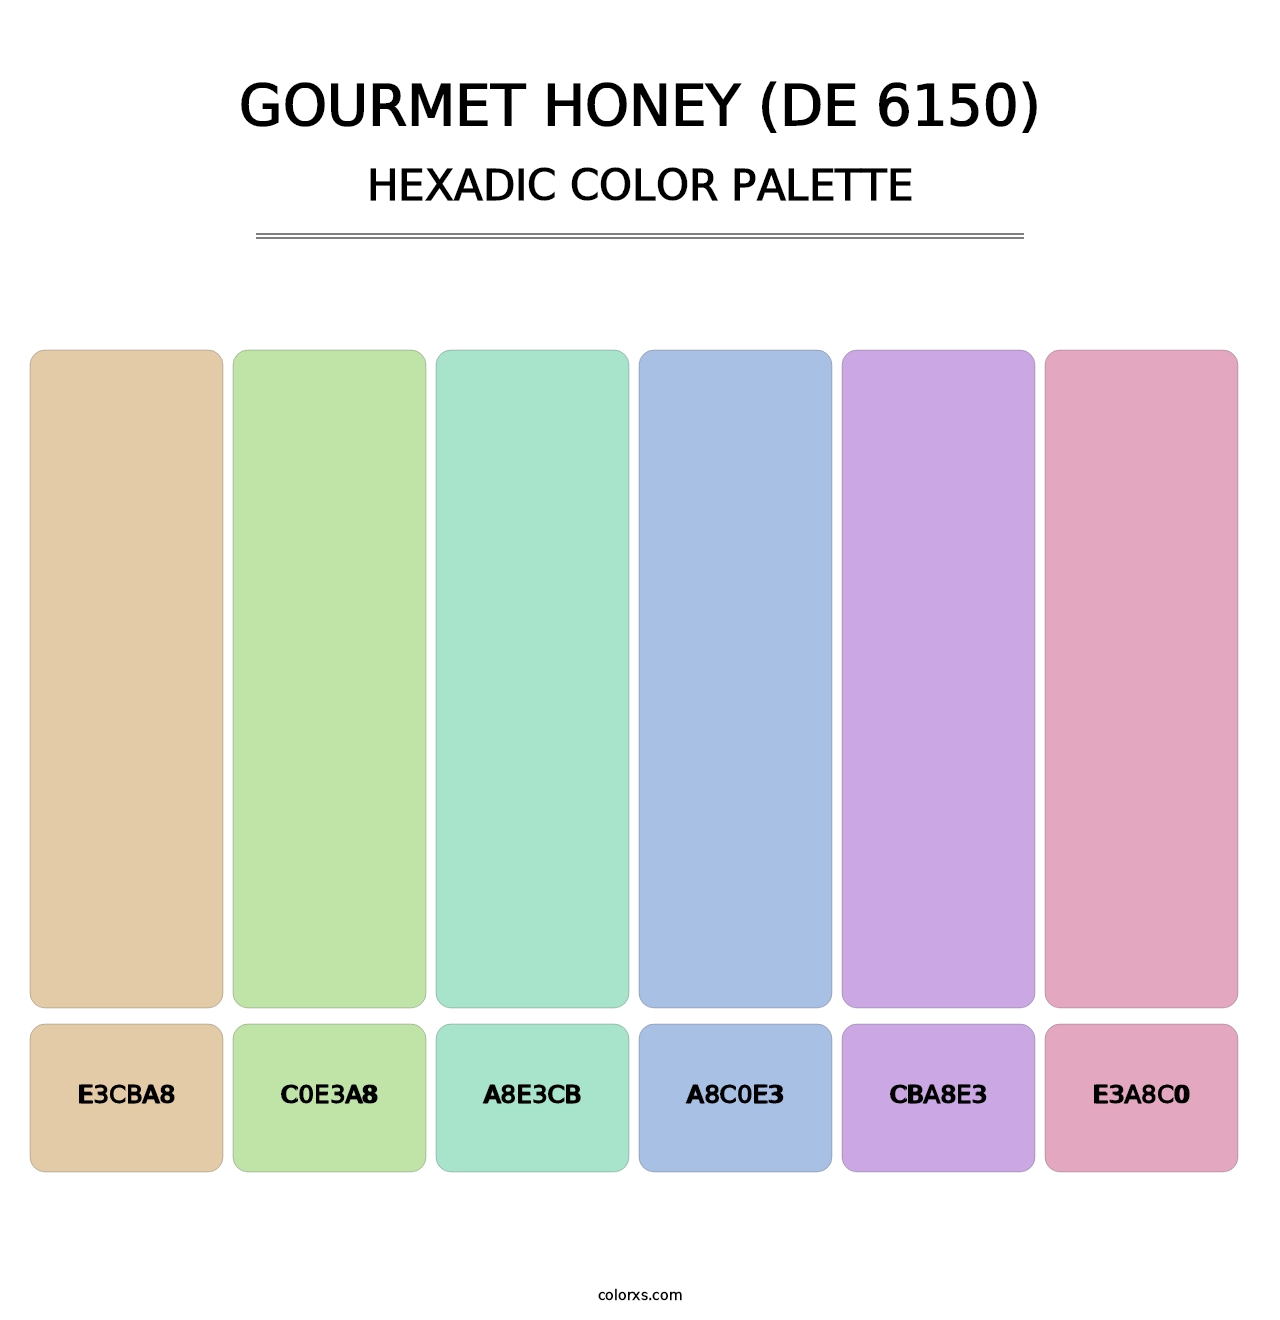 Gourmet Honey (DE 6150) - Hexadic Color Palette